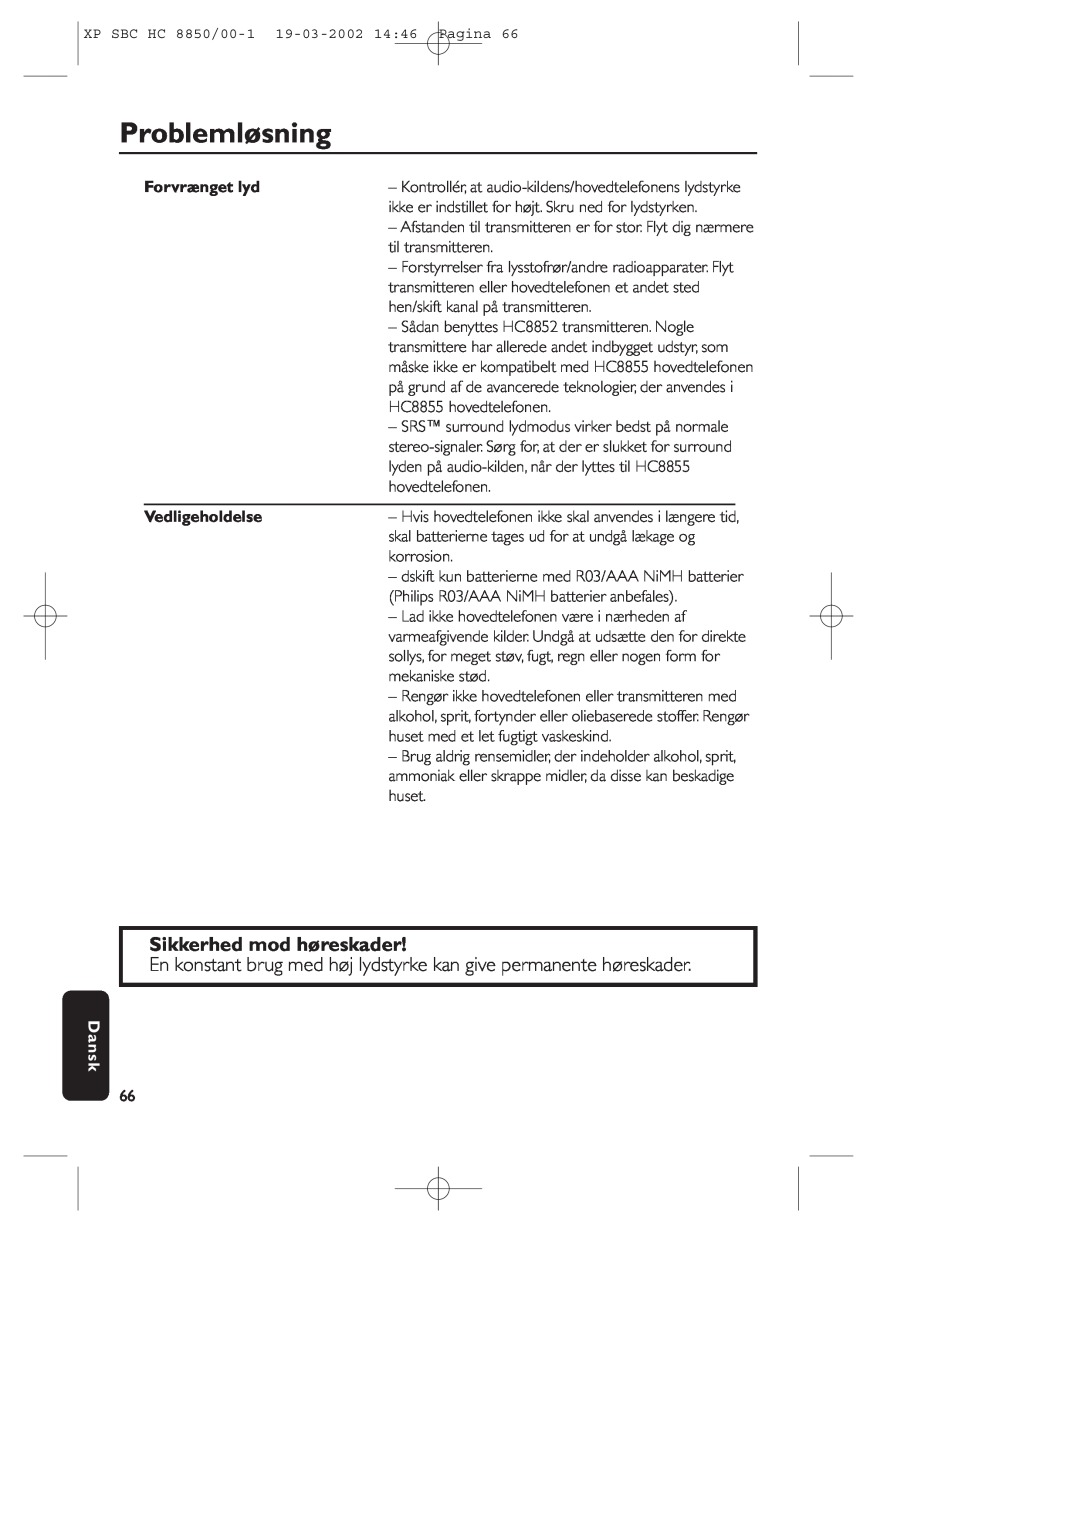 Philips HC8850 manual Problemløsning, Sikkerhed mod høreskader, Forvrænget lyd, Vedligeholdelse, Dansk 